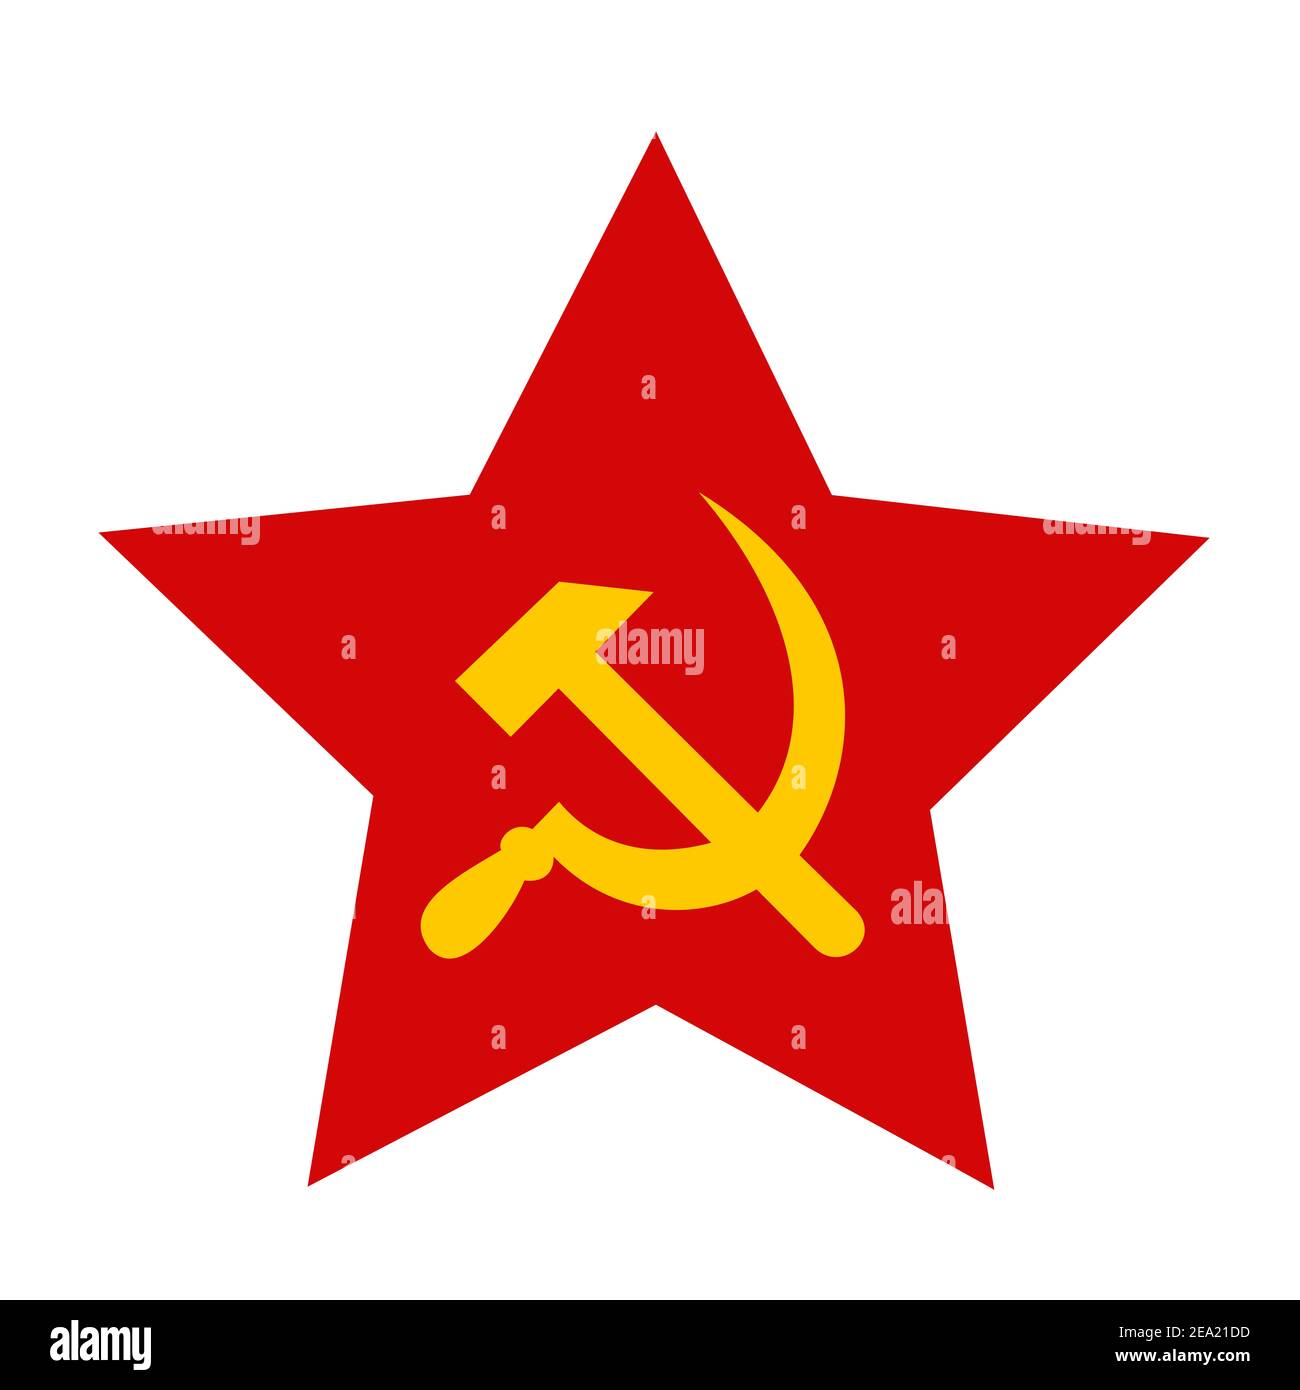 Estrella roja con martillo y hoz - símbolo y signo del comunismo y del socialismo. Ilustración vectorial aislada sobre blanco. Foto de stock